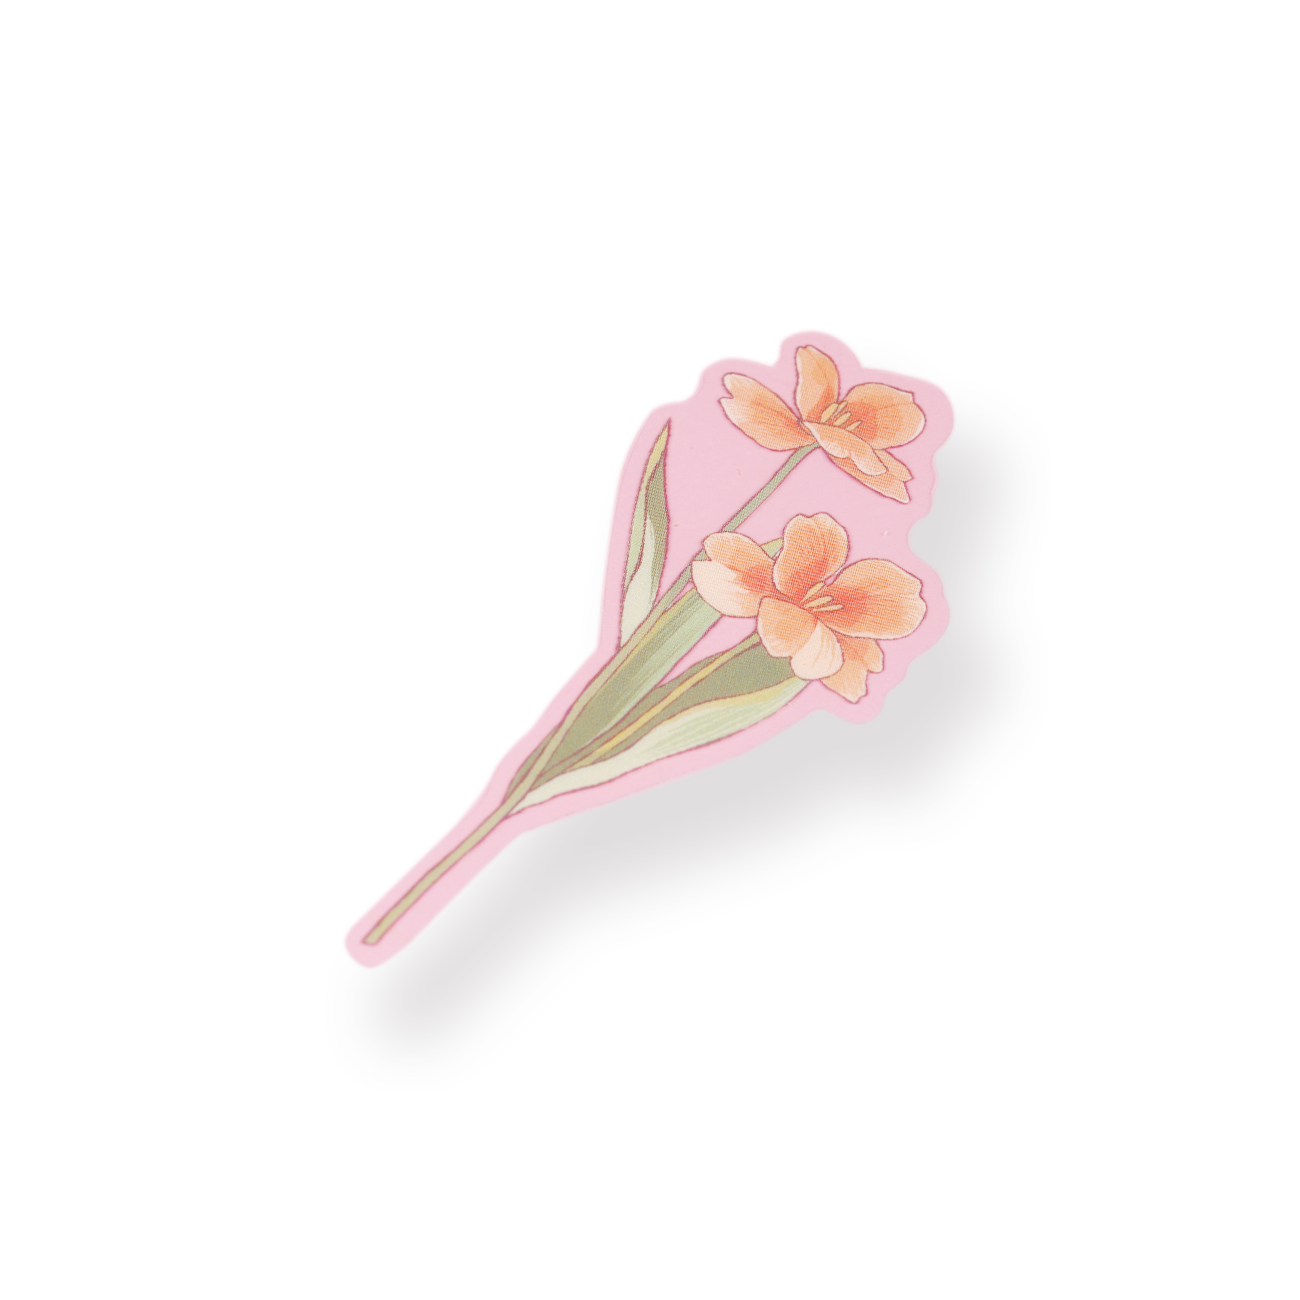 Loose flowers - Flower - Sticker